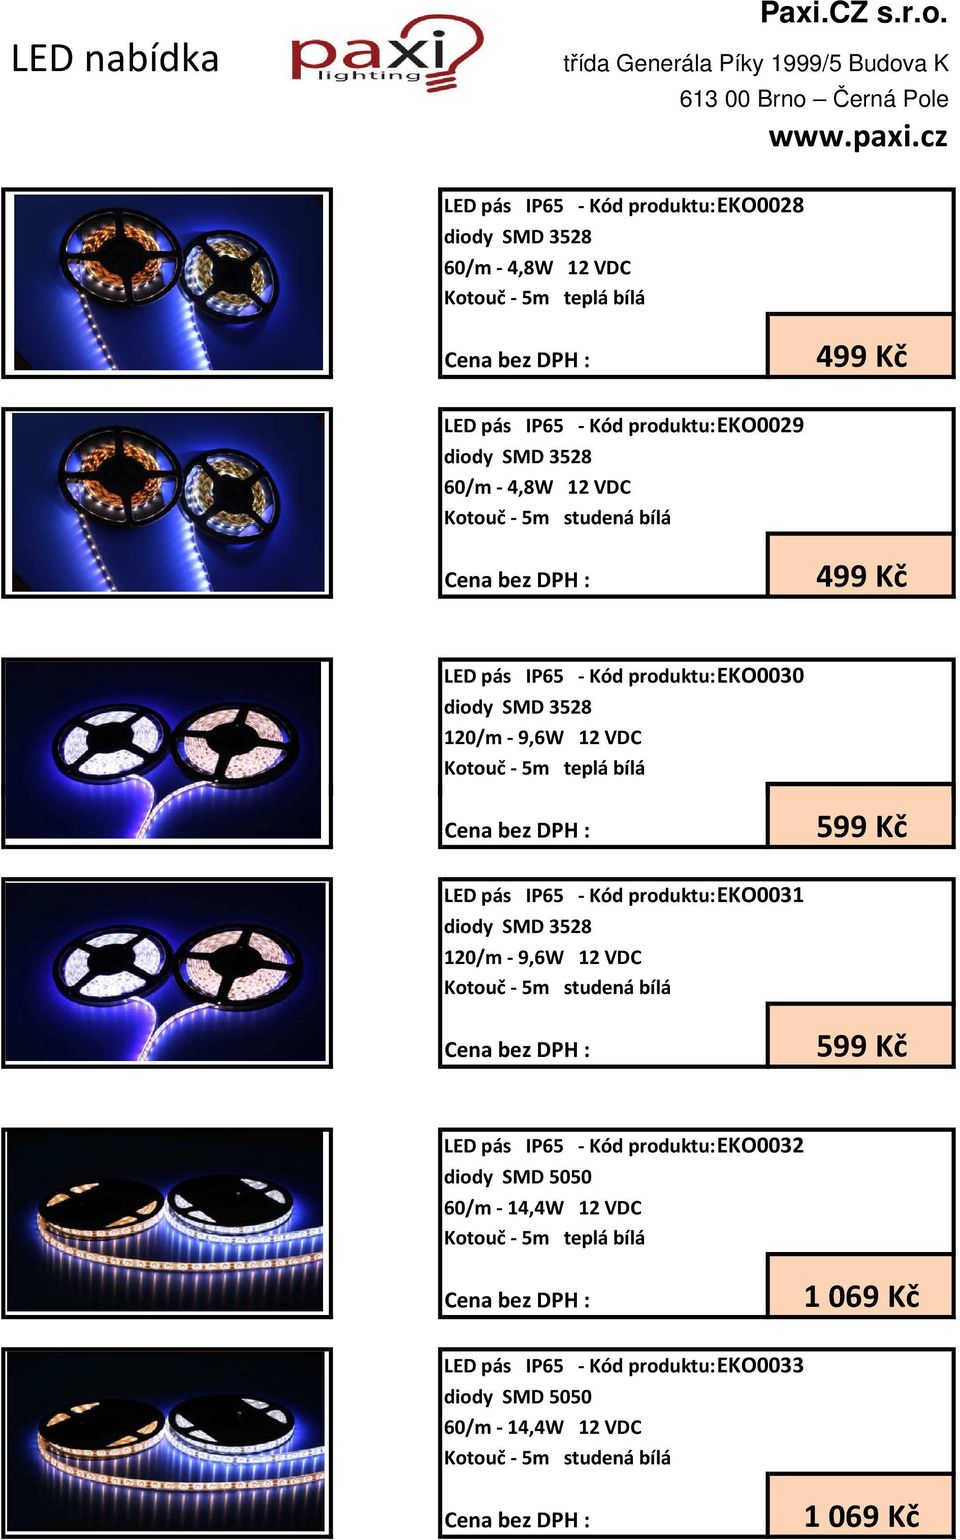 VDC 499 Kč LED pás IP65 - Kód produktu:eko0030 120/m - 9,6W 12 VDC 599 Kč LED pás IP65 - Kód produktu:eko0031 120/m